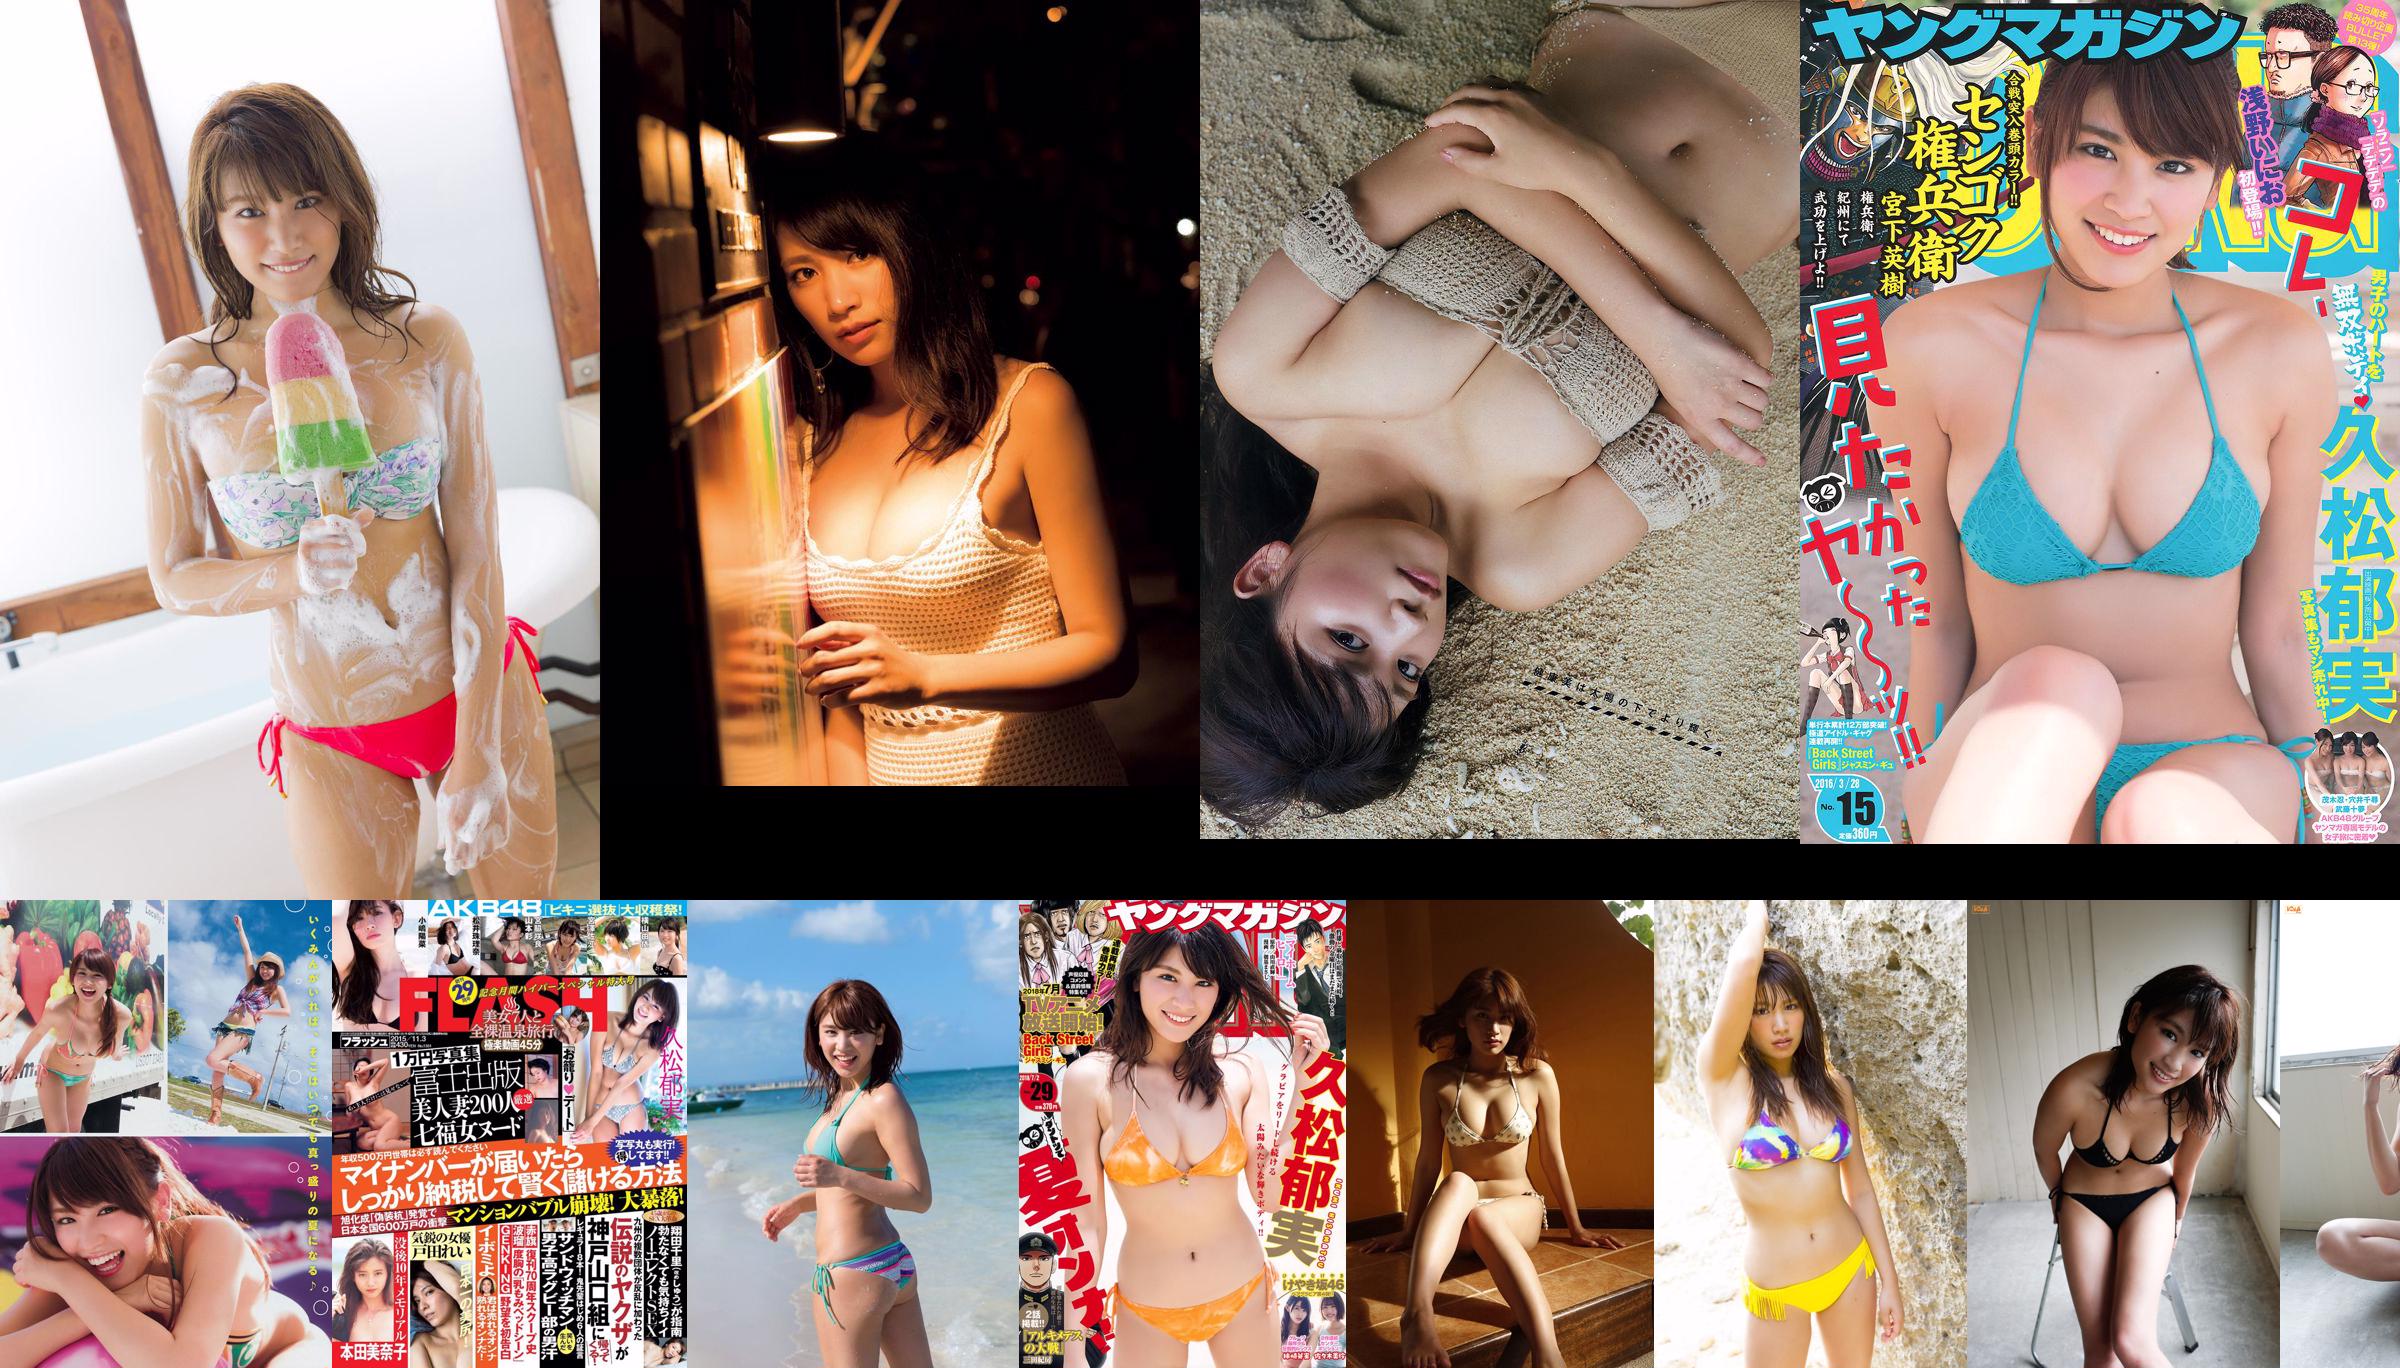 [Young Magazine] Hisamatsu Yumi Tomaru Sayaka 2014 Magazine photo n ° 50 No.8a2b48 Page 6